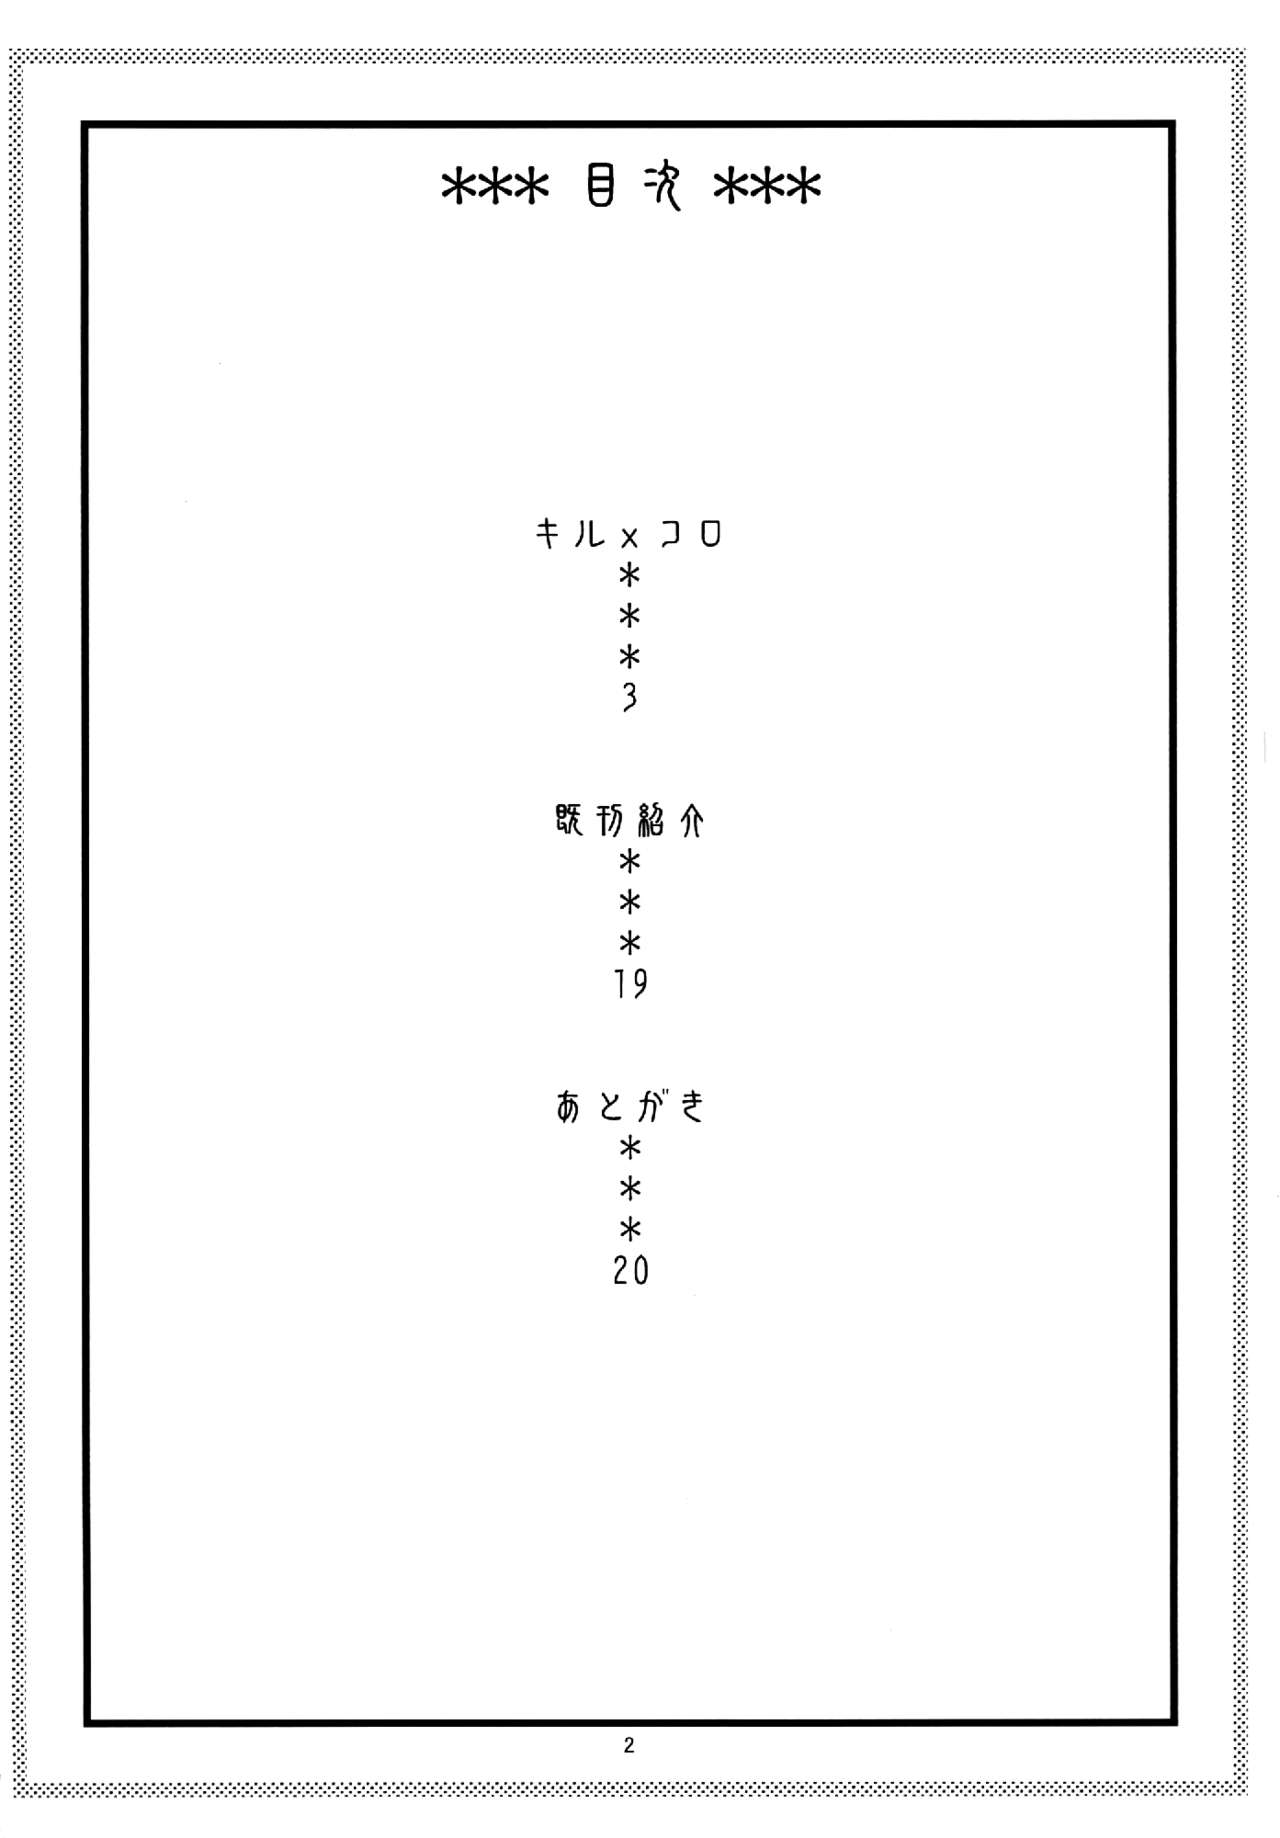 Kiru × Koro numero d'image 2